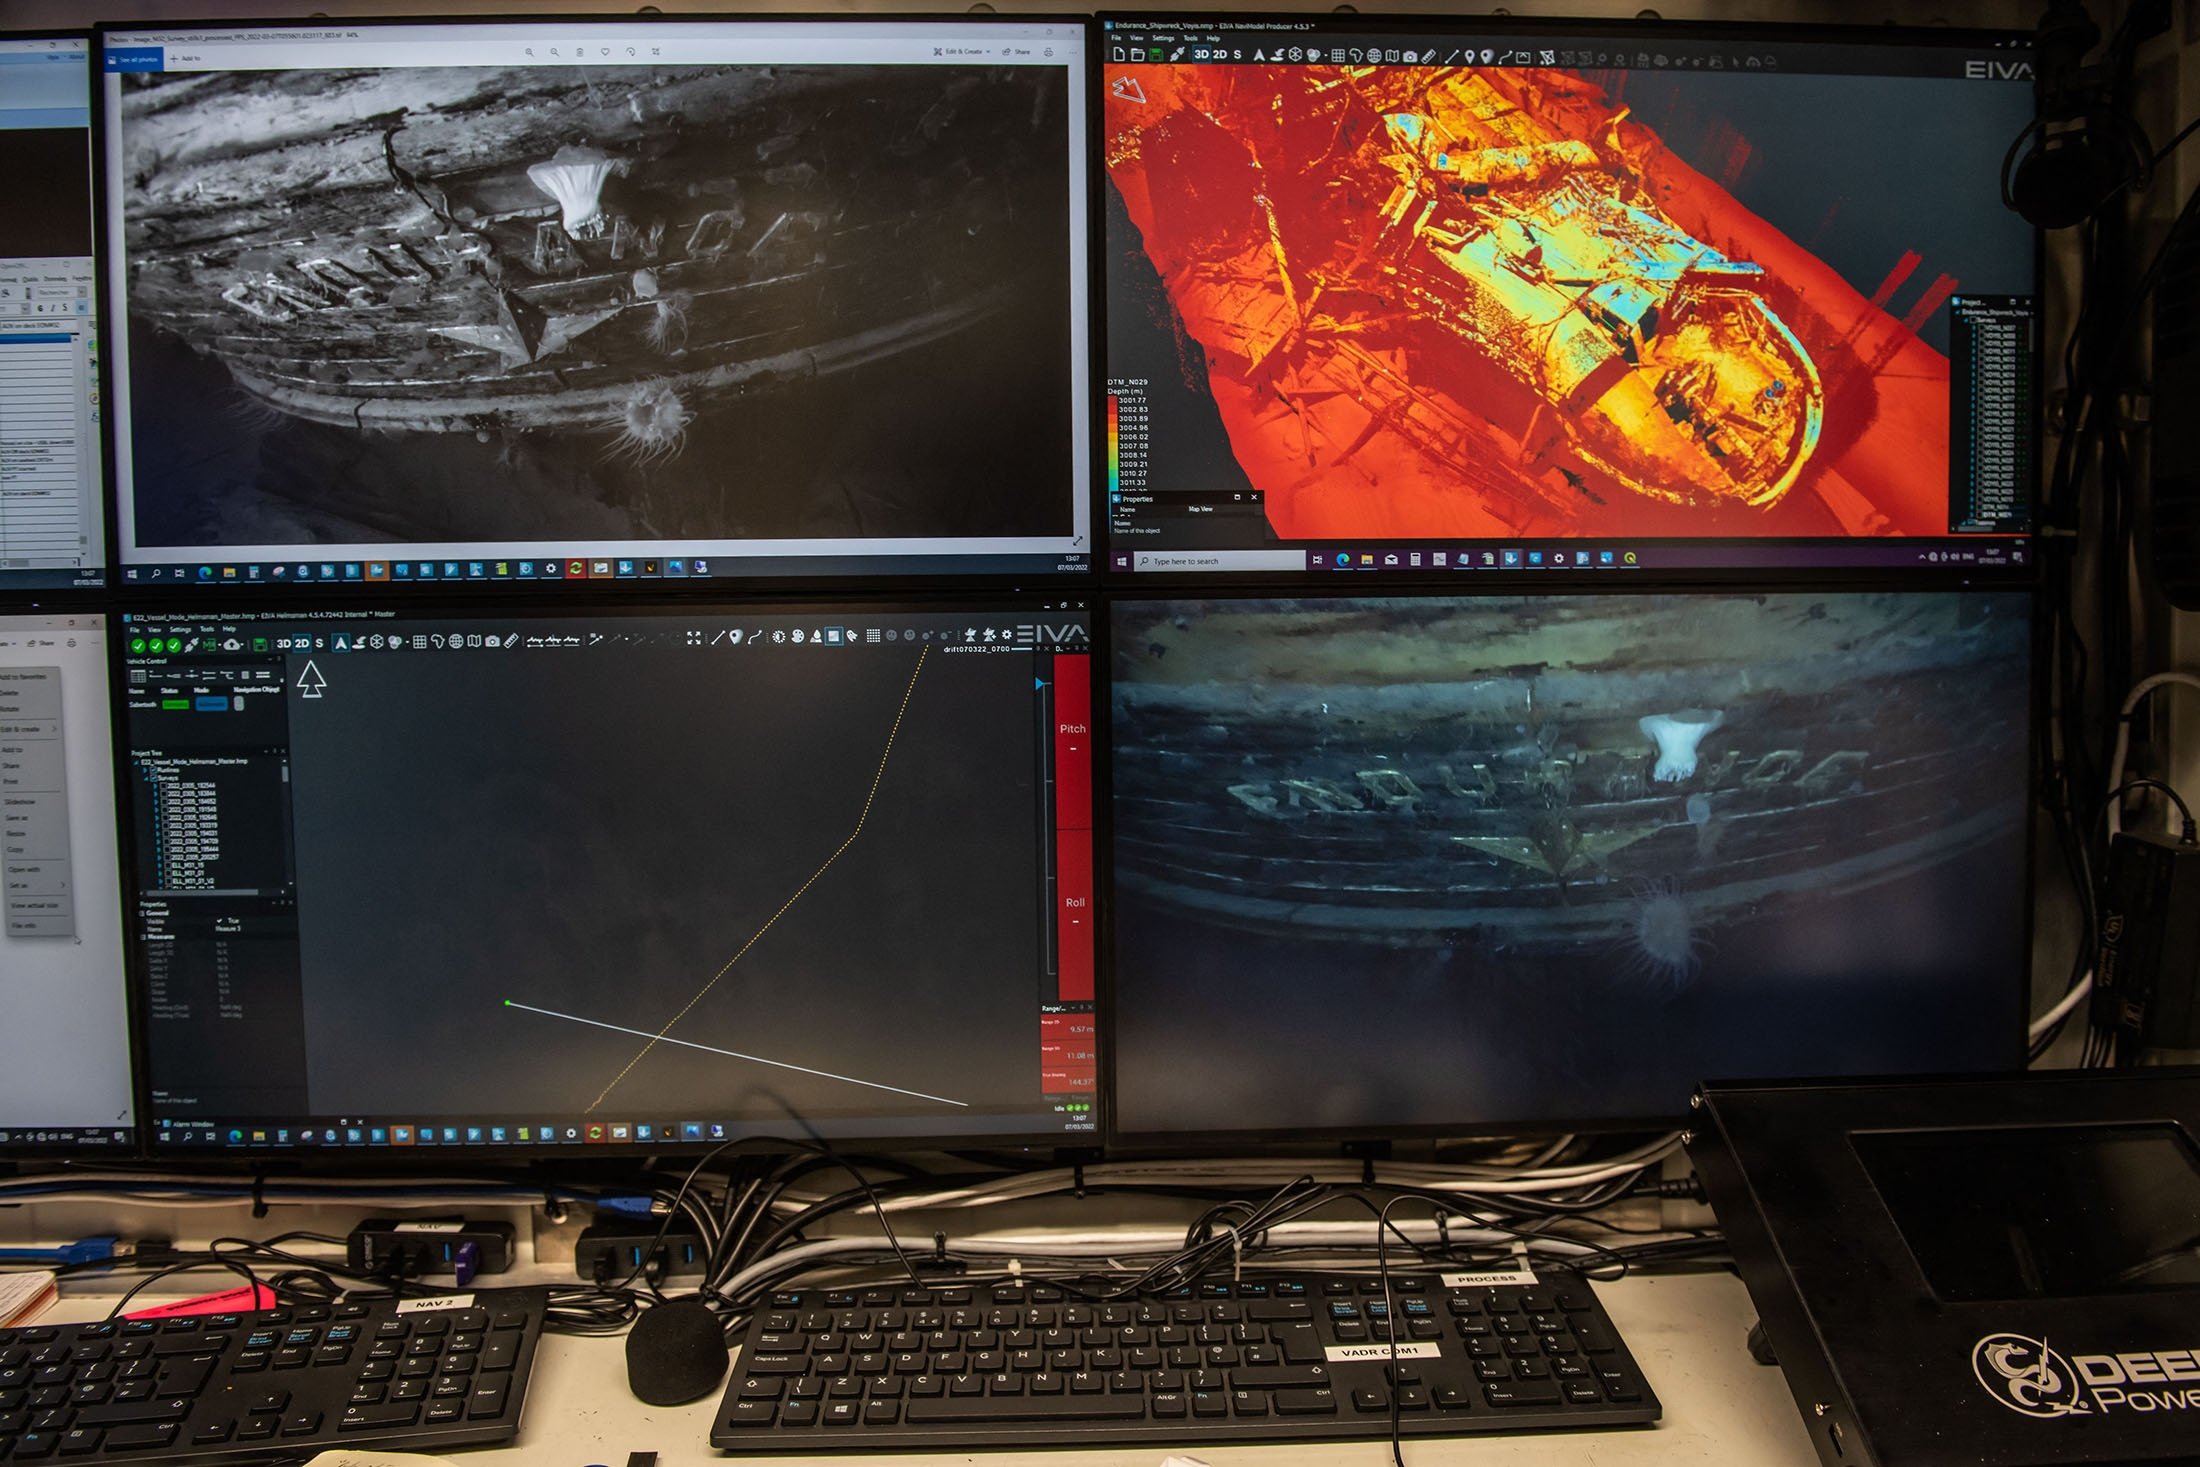 Foto, video, dan gambar laser dari Ernest Shackleton's Endurance ditampilkan di ruang kendali AUV di atas kapal SA Agulhas II selama ekspedisi Endurance22, di Laut Weddell, Antartika, 23 Februari 2022. (Falklands Maritime Heritage Trust via AFP)